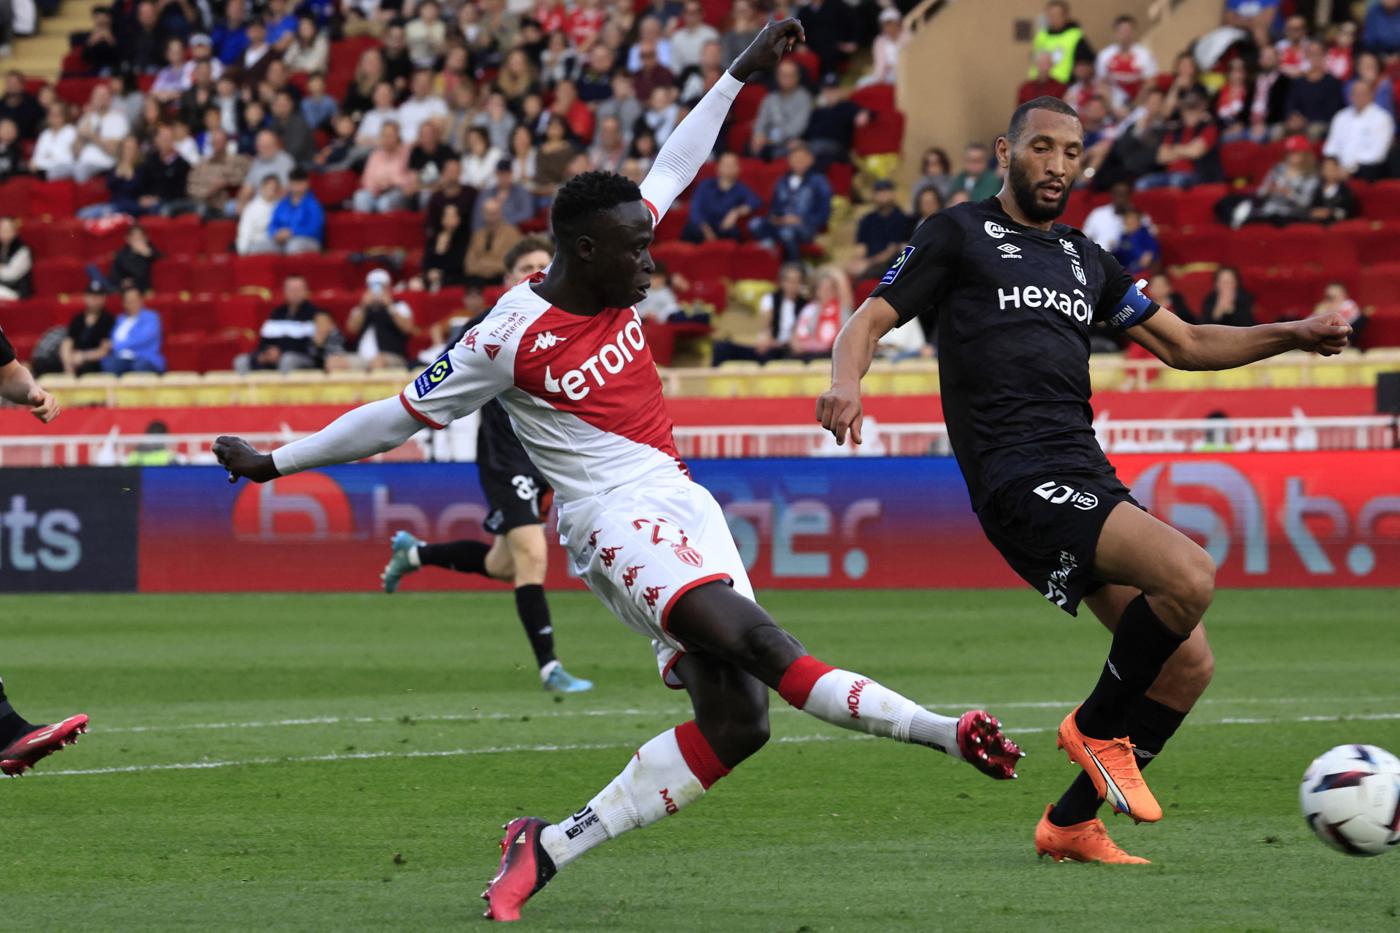 Monaco v Reims - 0-1. Liga Mistrzów UEFA, dzień meczowy 27. Przegląd meczu, statystyki.